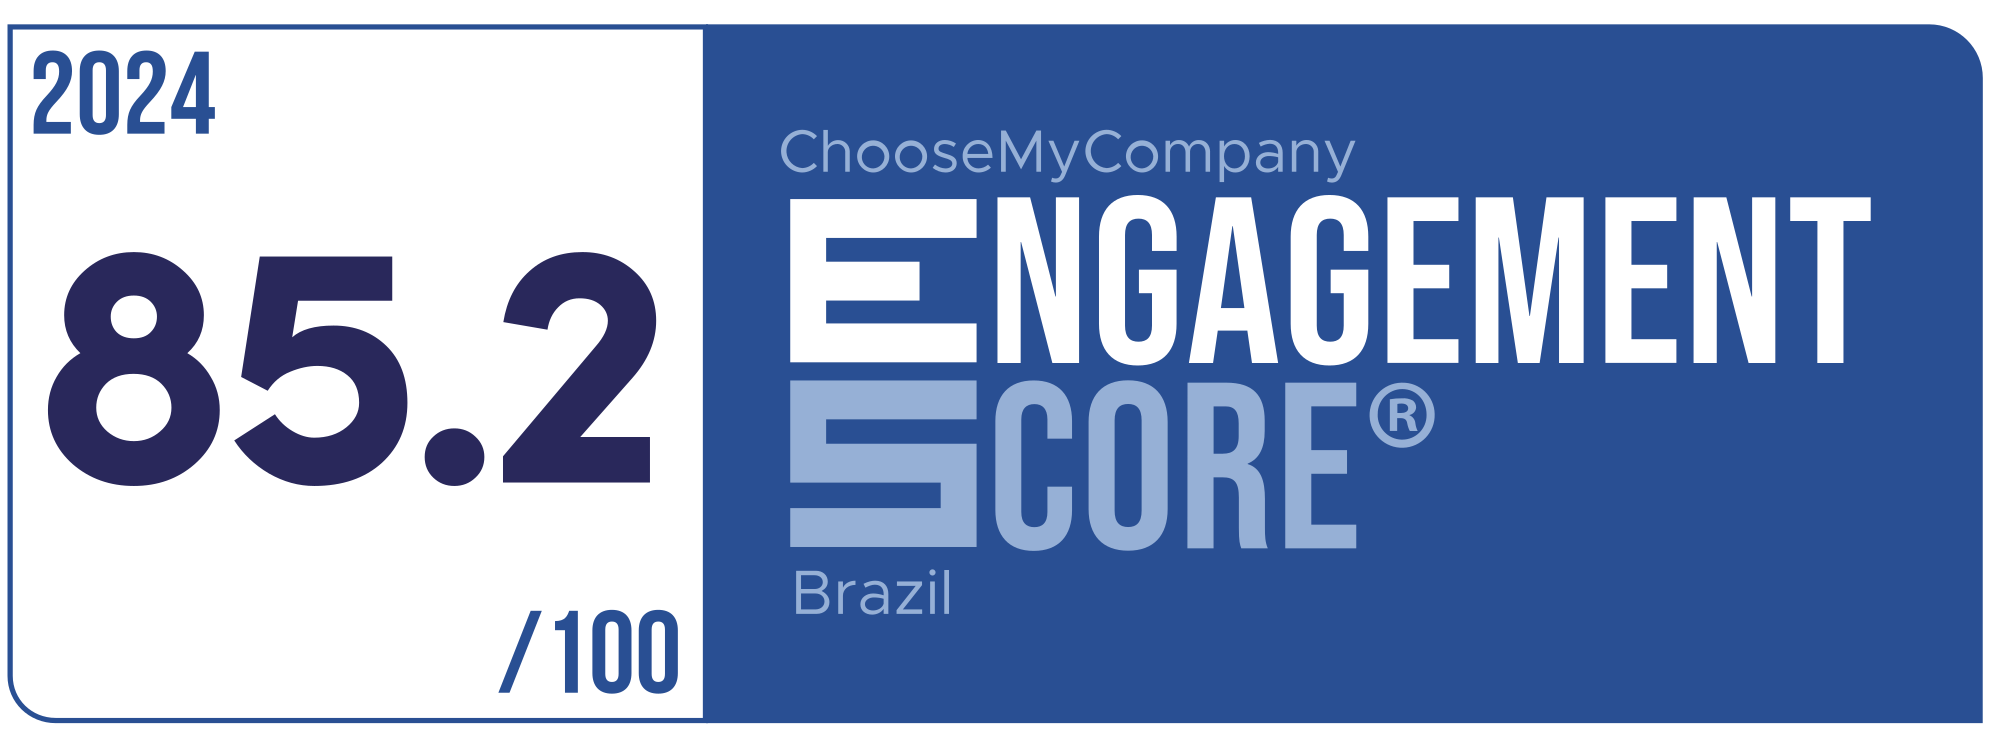 Label Engagement Score 2024 Brazil